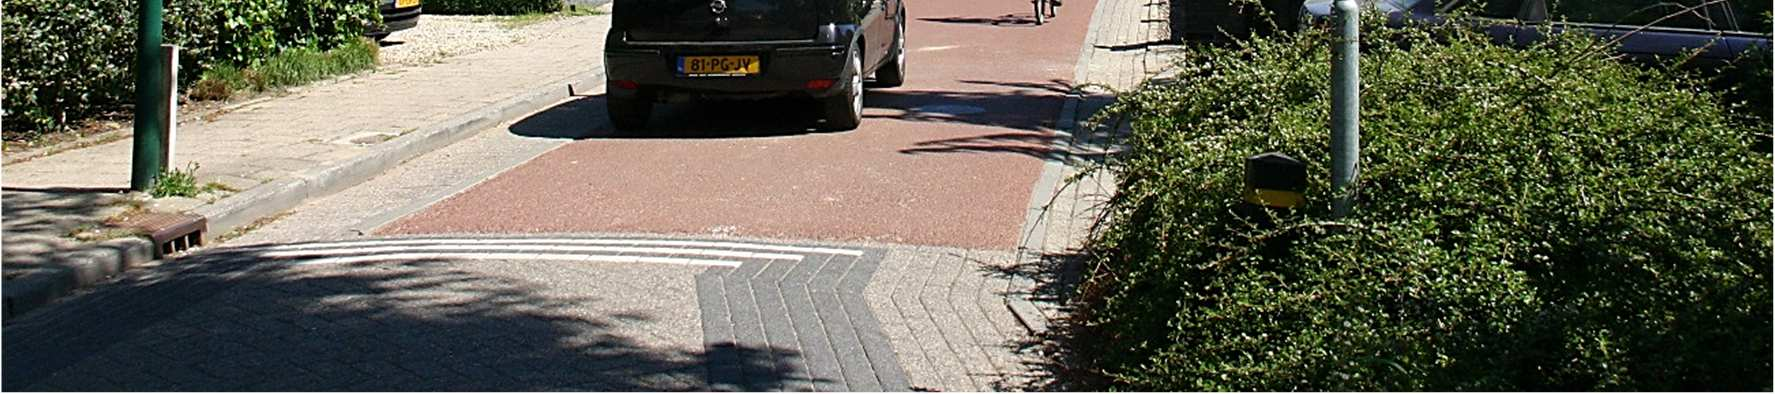 22 Monet tonttikadut soveltuvat hyvin pyöräkaduiksi. Kadunvarsipysäköinti on kielletty pyöräkadulla.